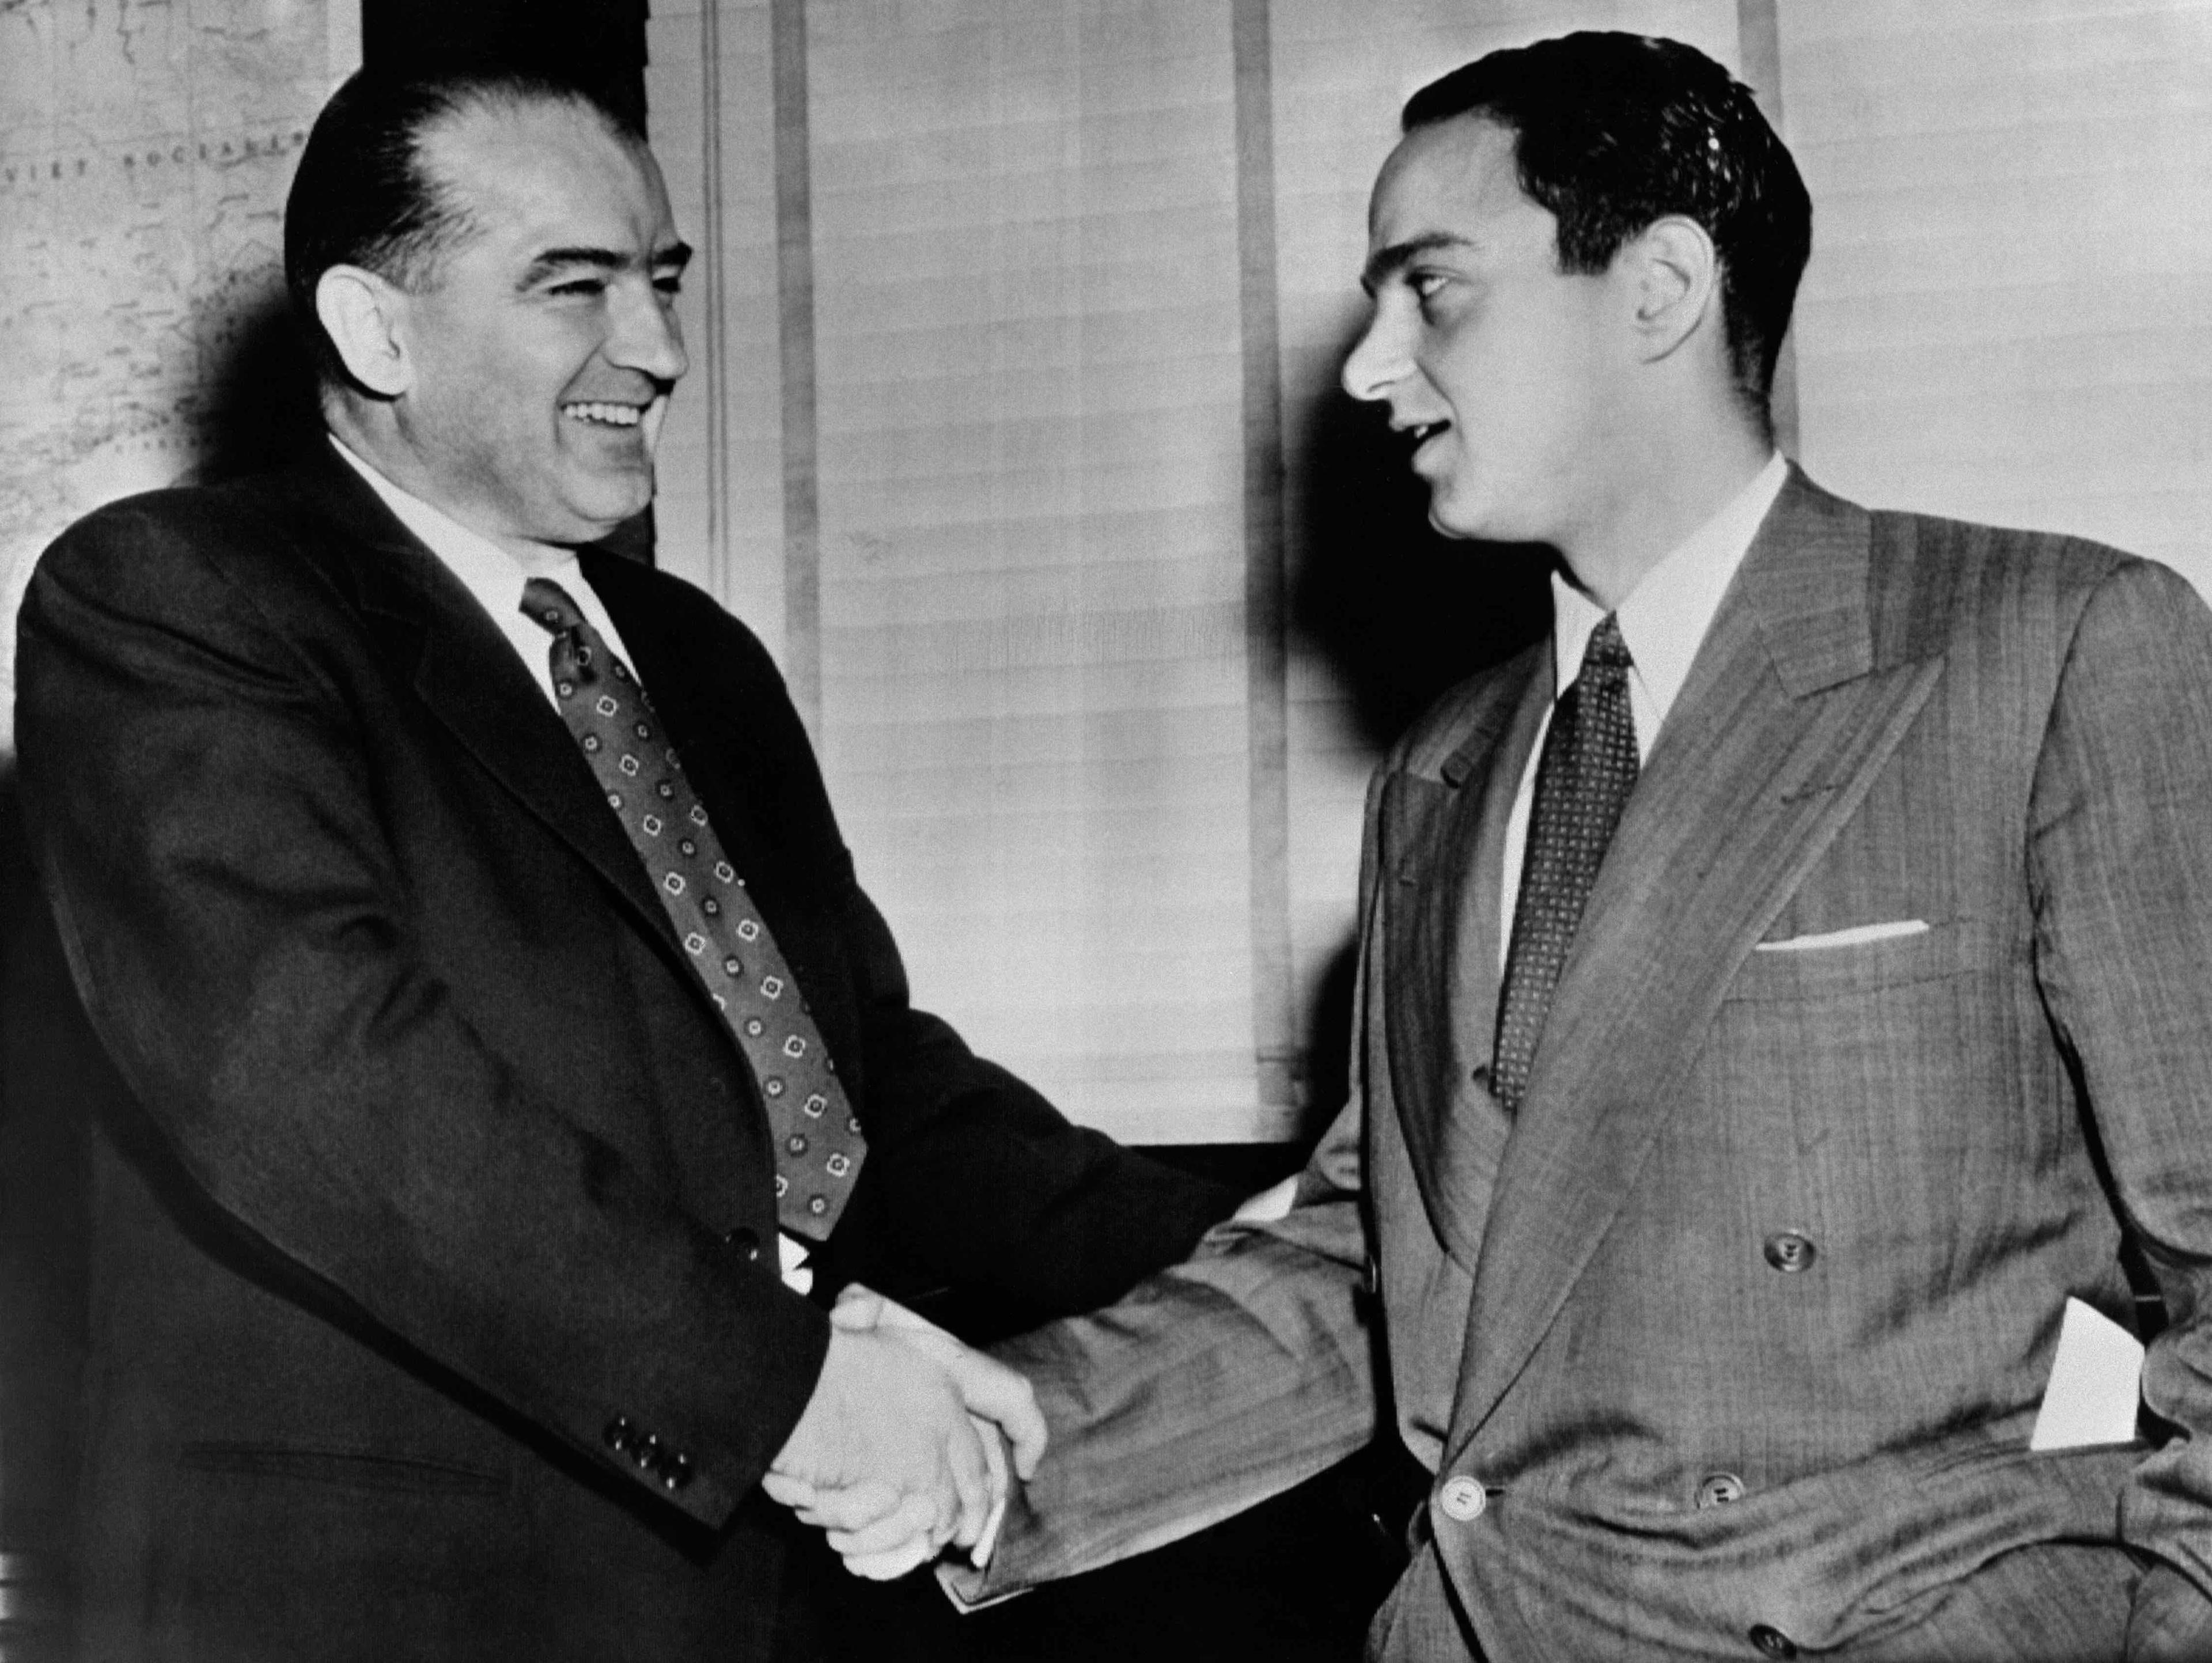 Czarno-białe zdjęcie przedstawiające dwóch mężczyzn w garniturach, którzy podają sobie ręce. Joseph McCarthy